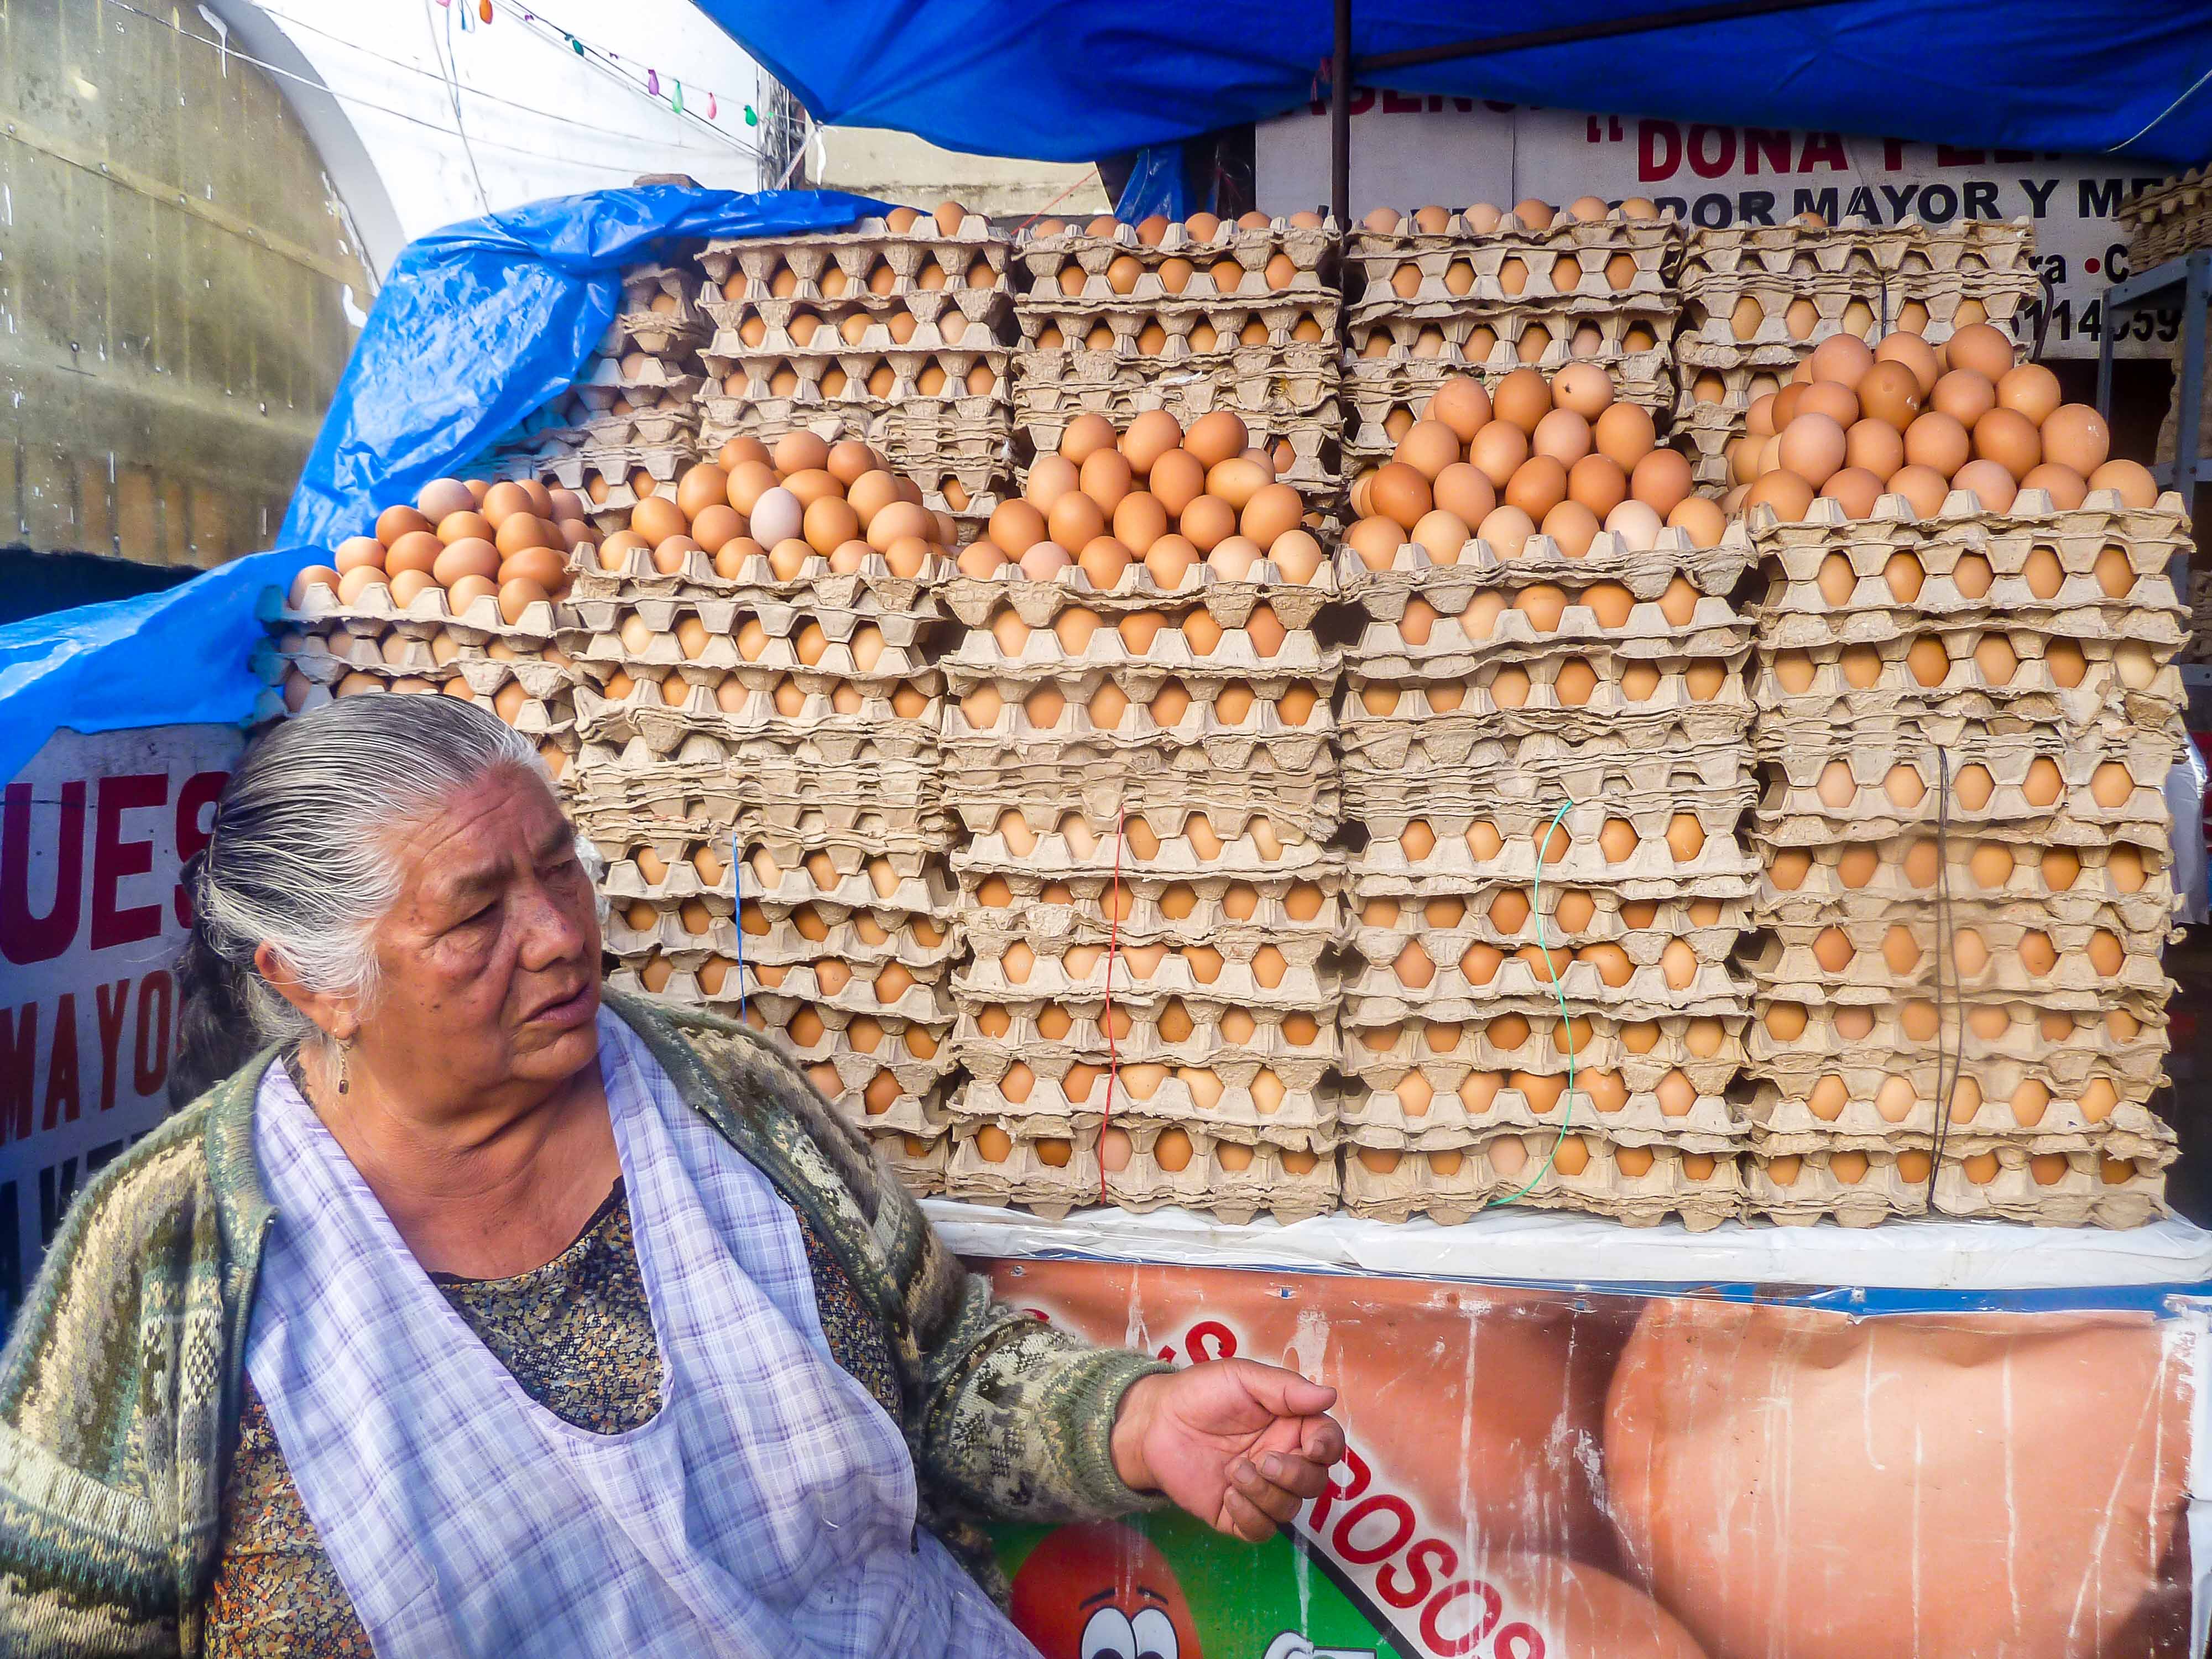 Venedora d'ous al mercat de Sucre (Bolívia)